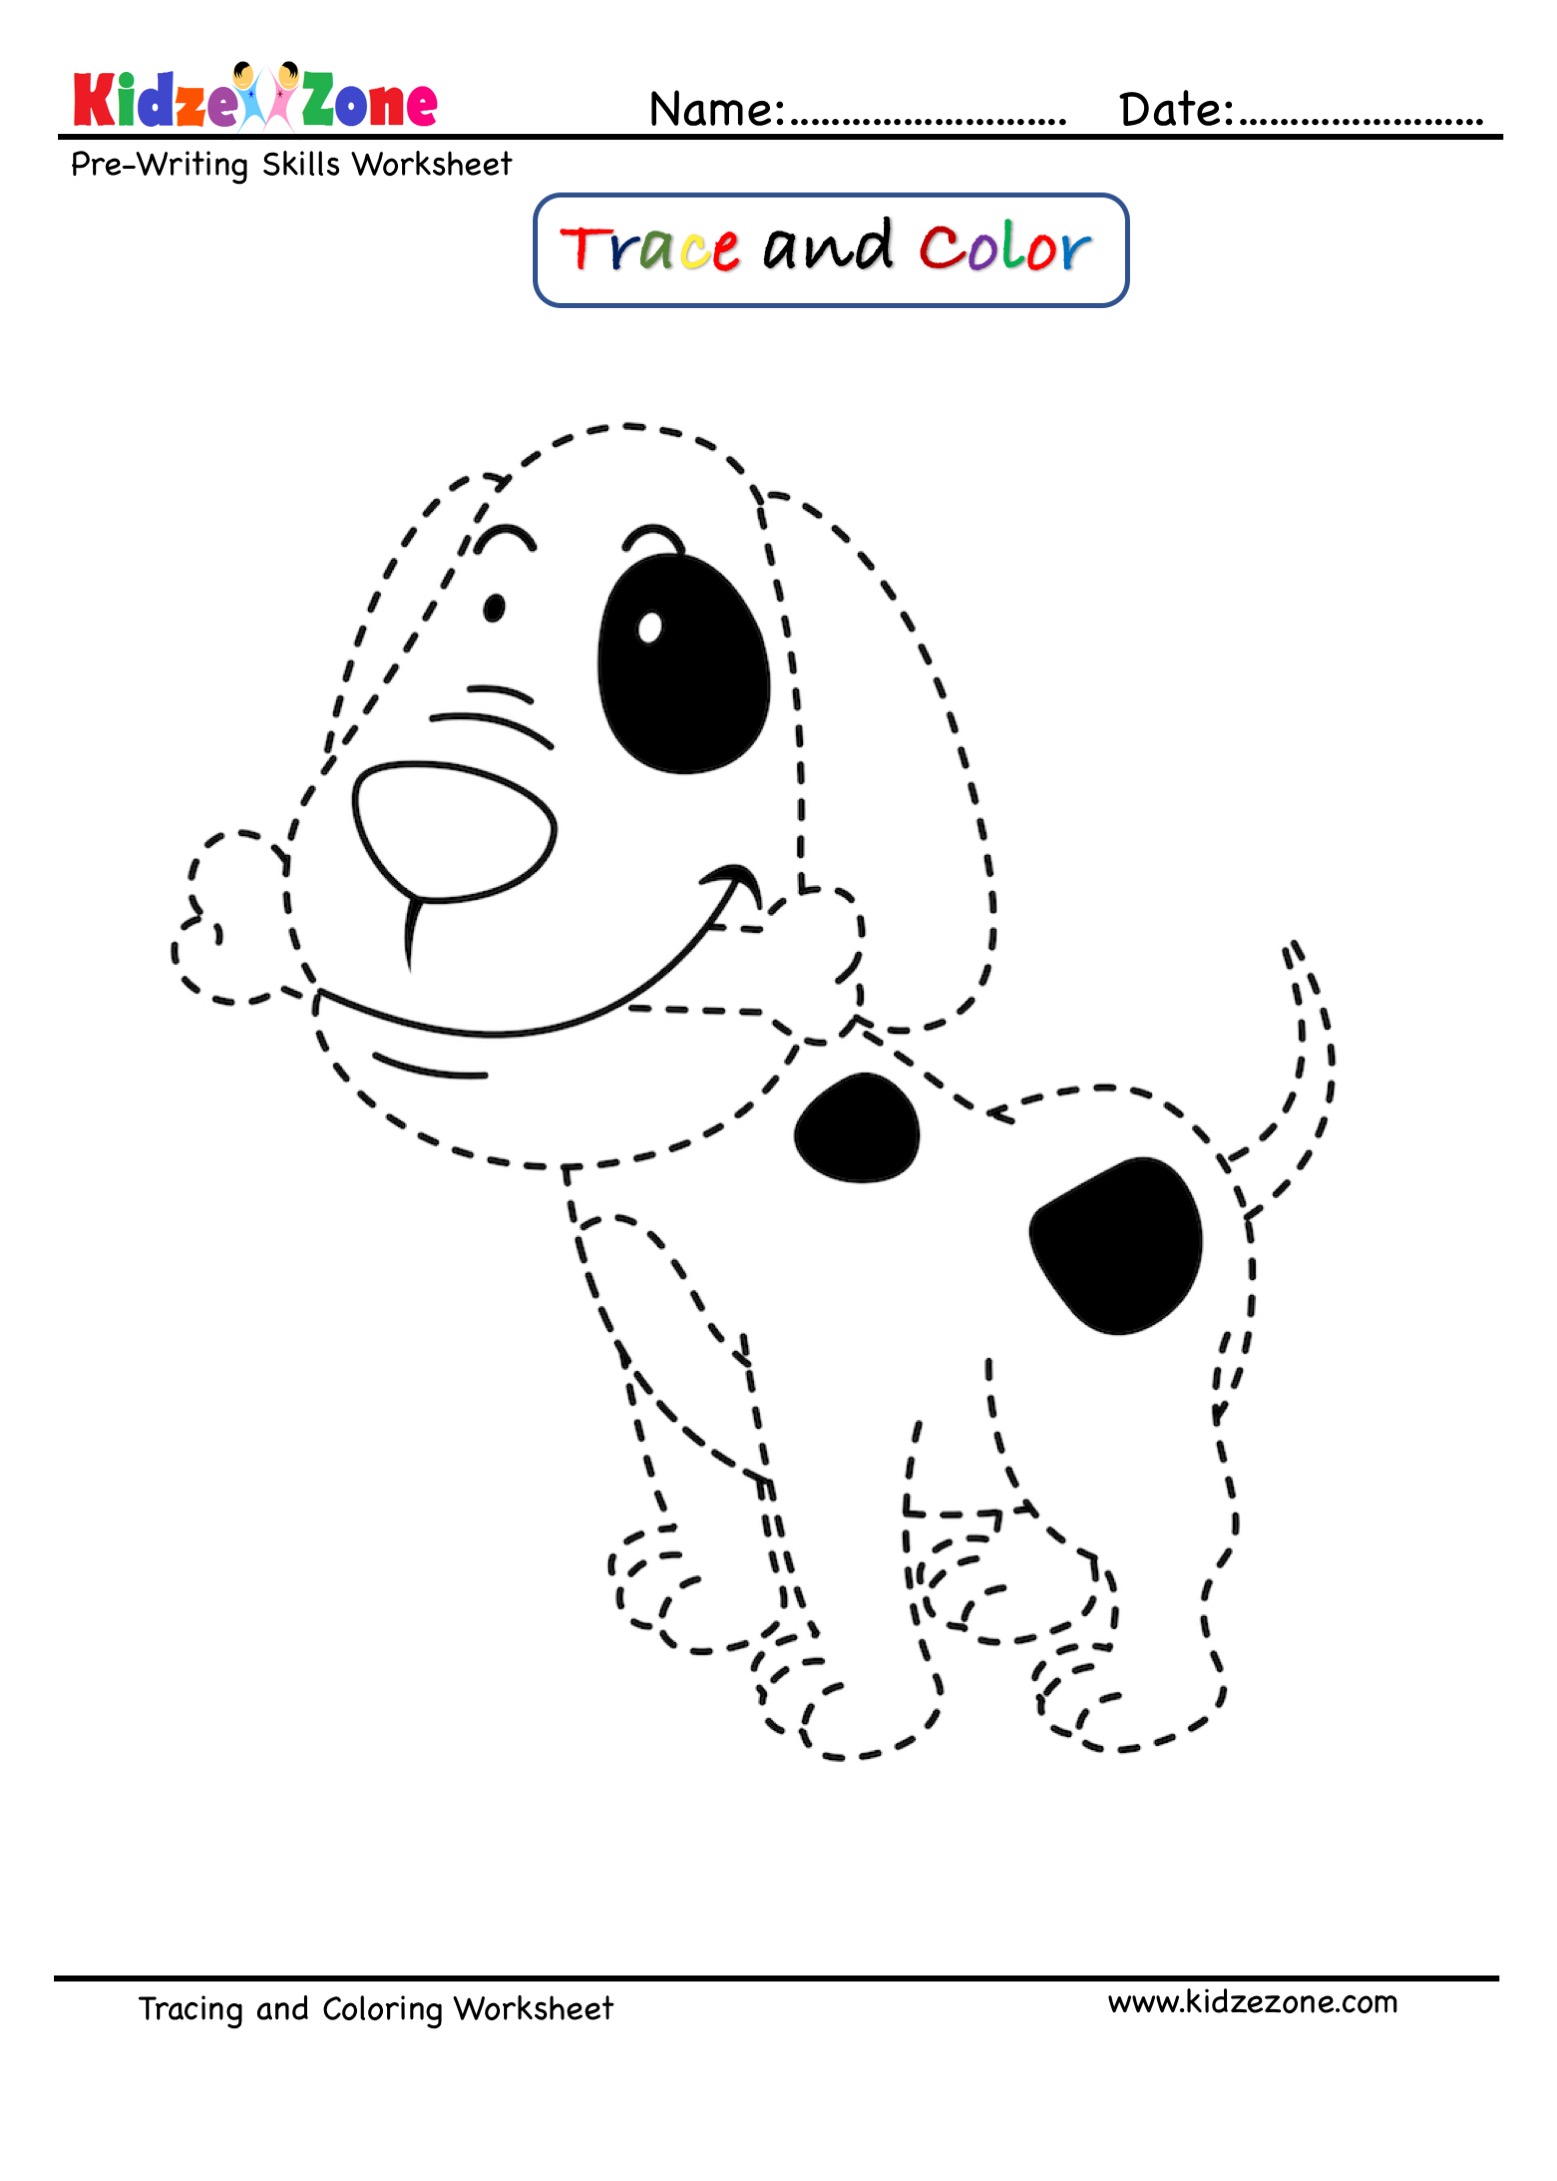 Dog Cartoon Trace and Color Worksheet - KidzeZone